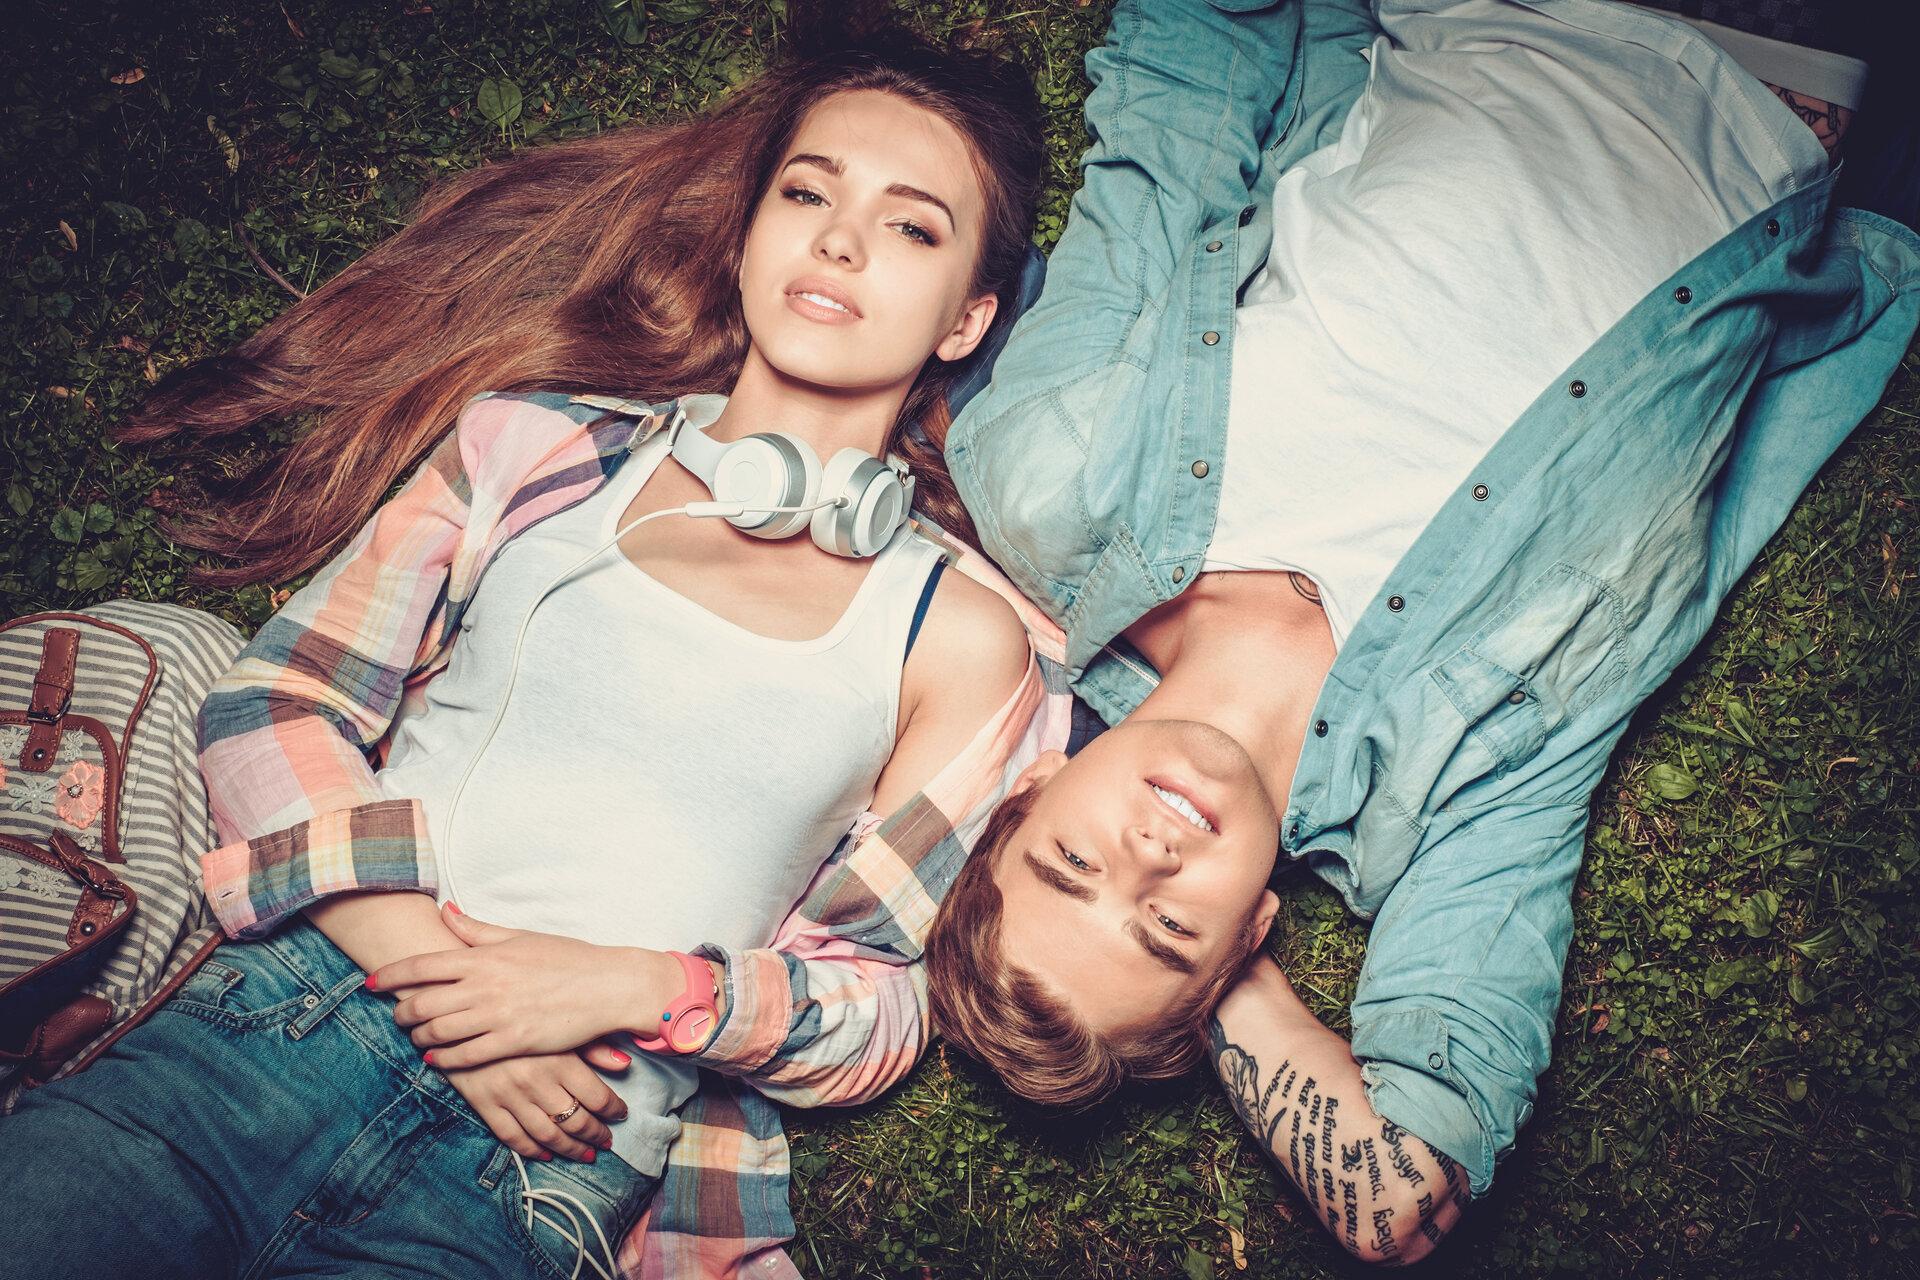 Fröhliches, junges Paar, mit stylischer Kleidung, das sich im grünen Park auf dem Boden ausruht.